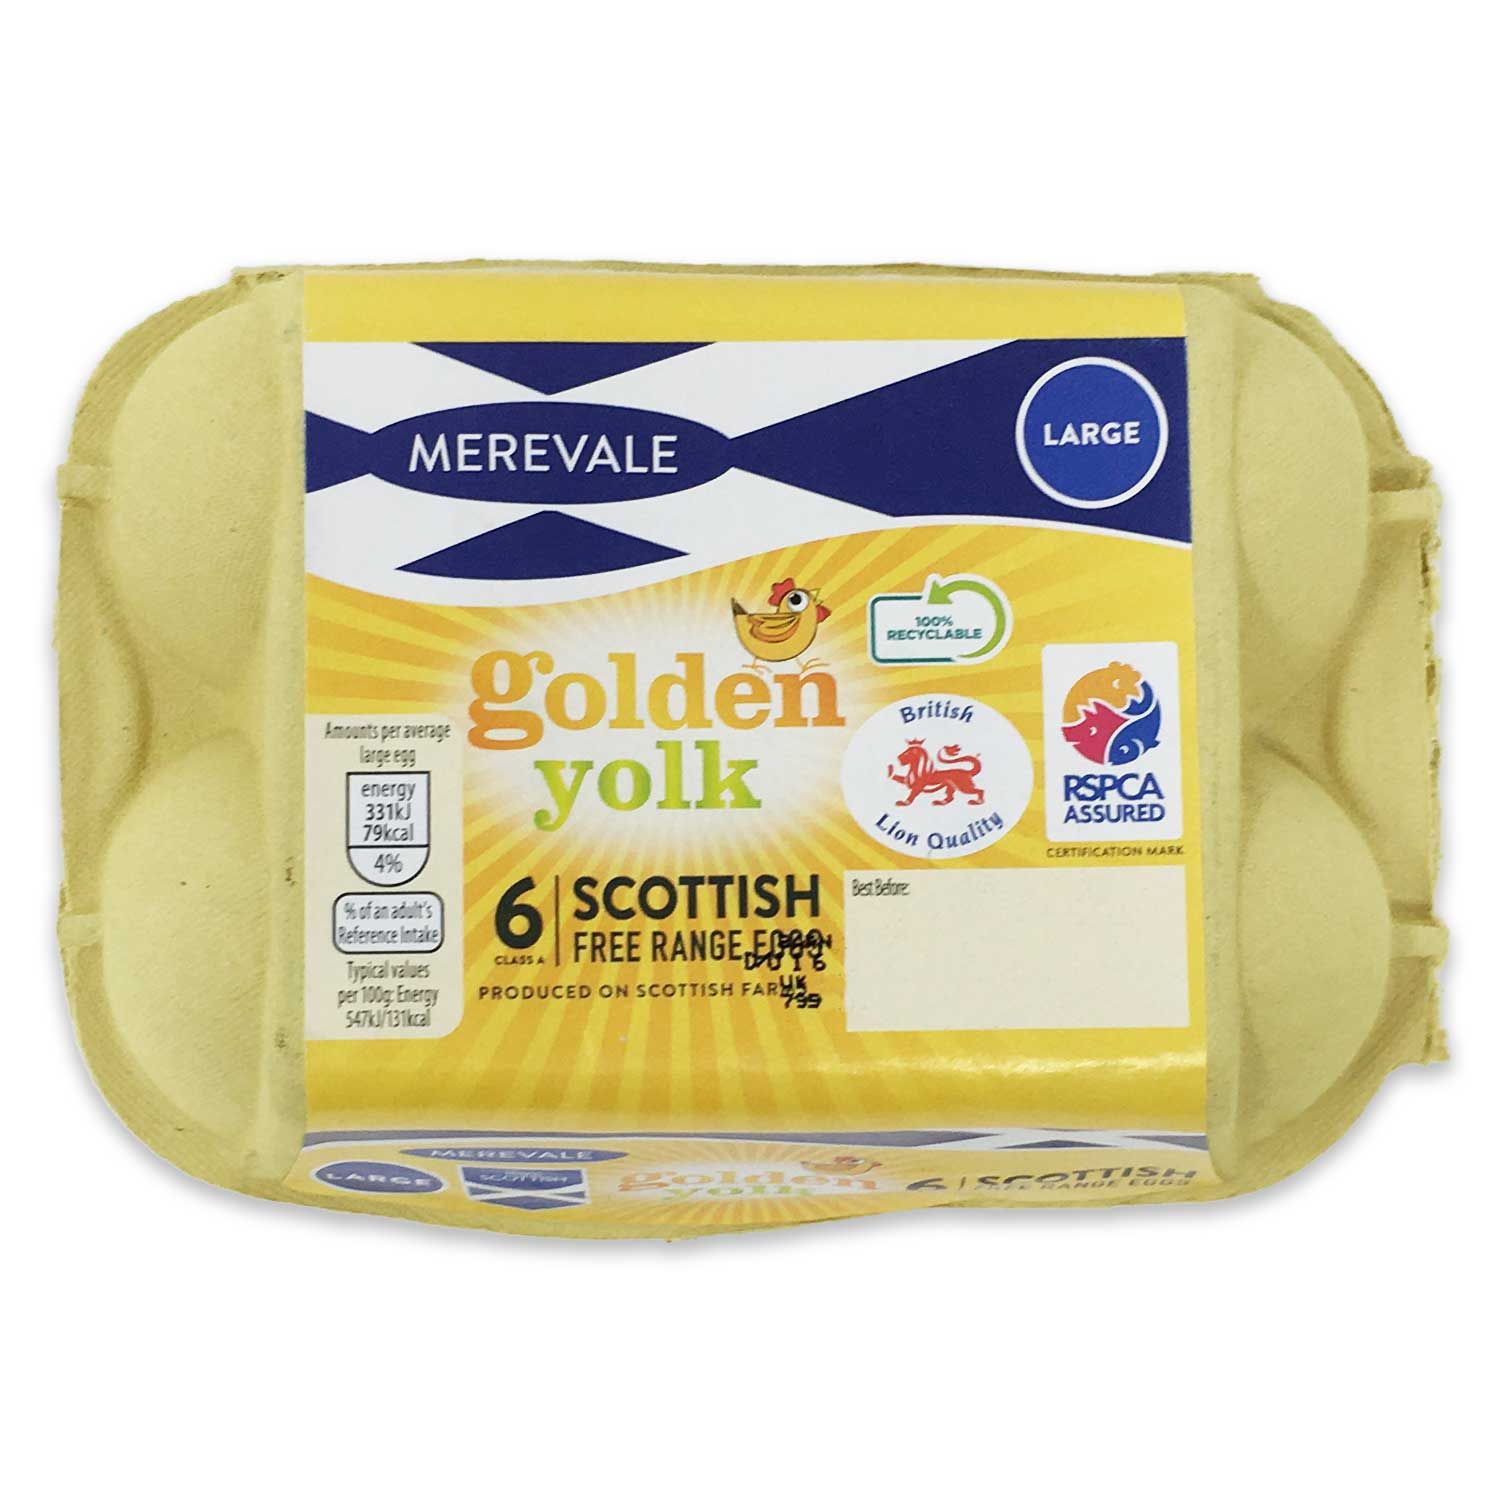 Merevale Large Scottish Free Range Golden Yolk Eggs 6 Pack